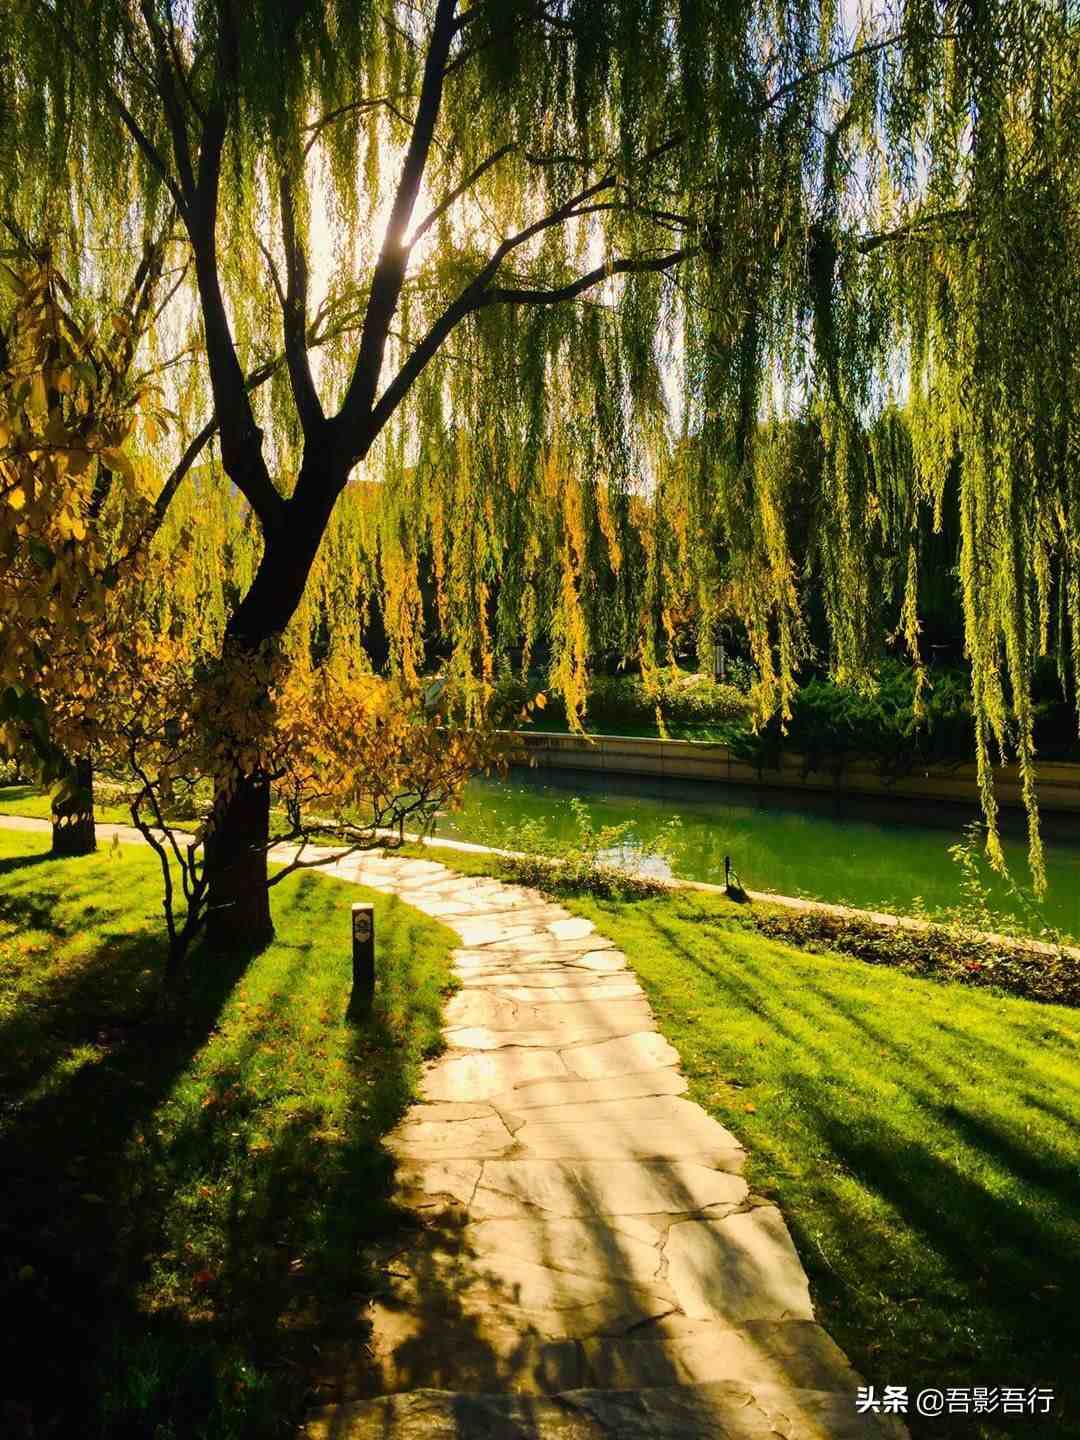 北京元大都遗址公园：遗迹众多、秋色醉人、晨跑、遛弯的生态园林